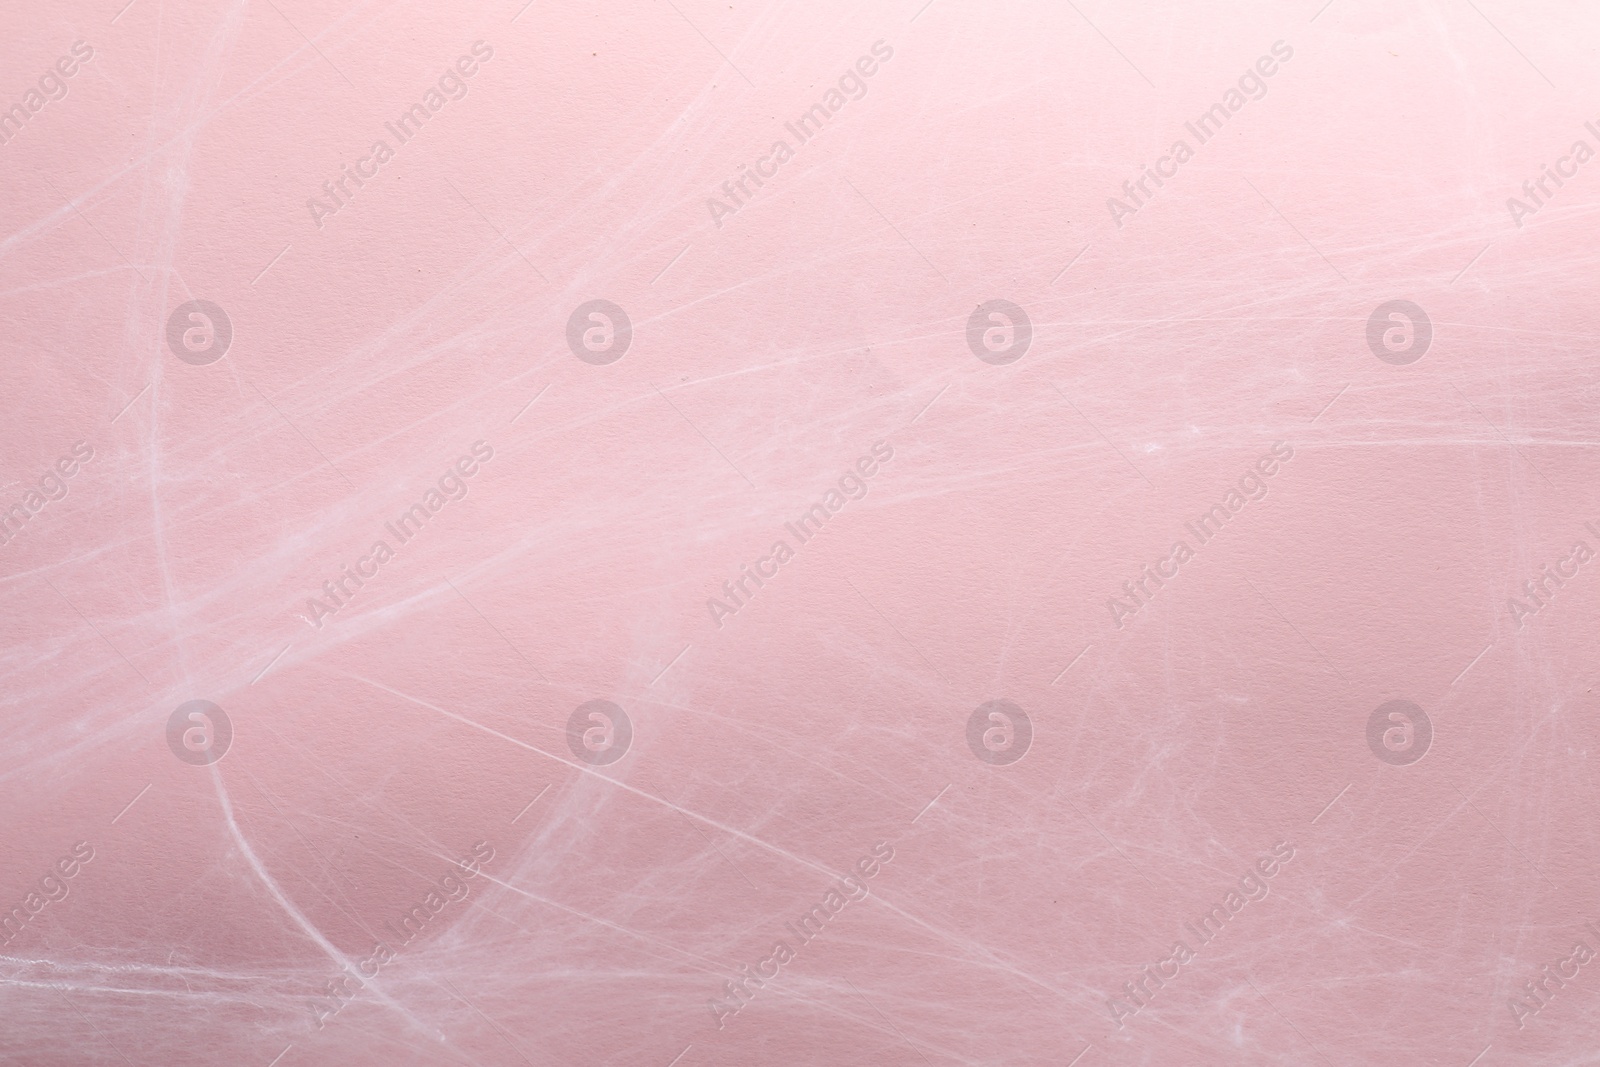 Photo of Creepy white cobweb hanging on pink background